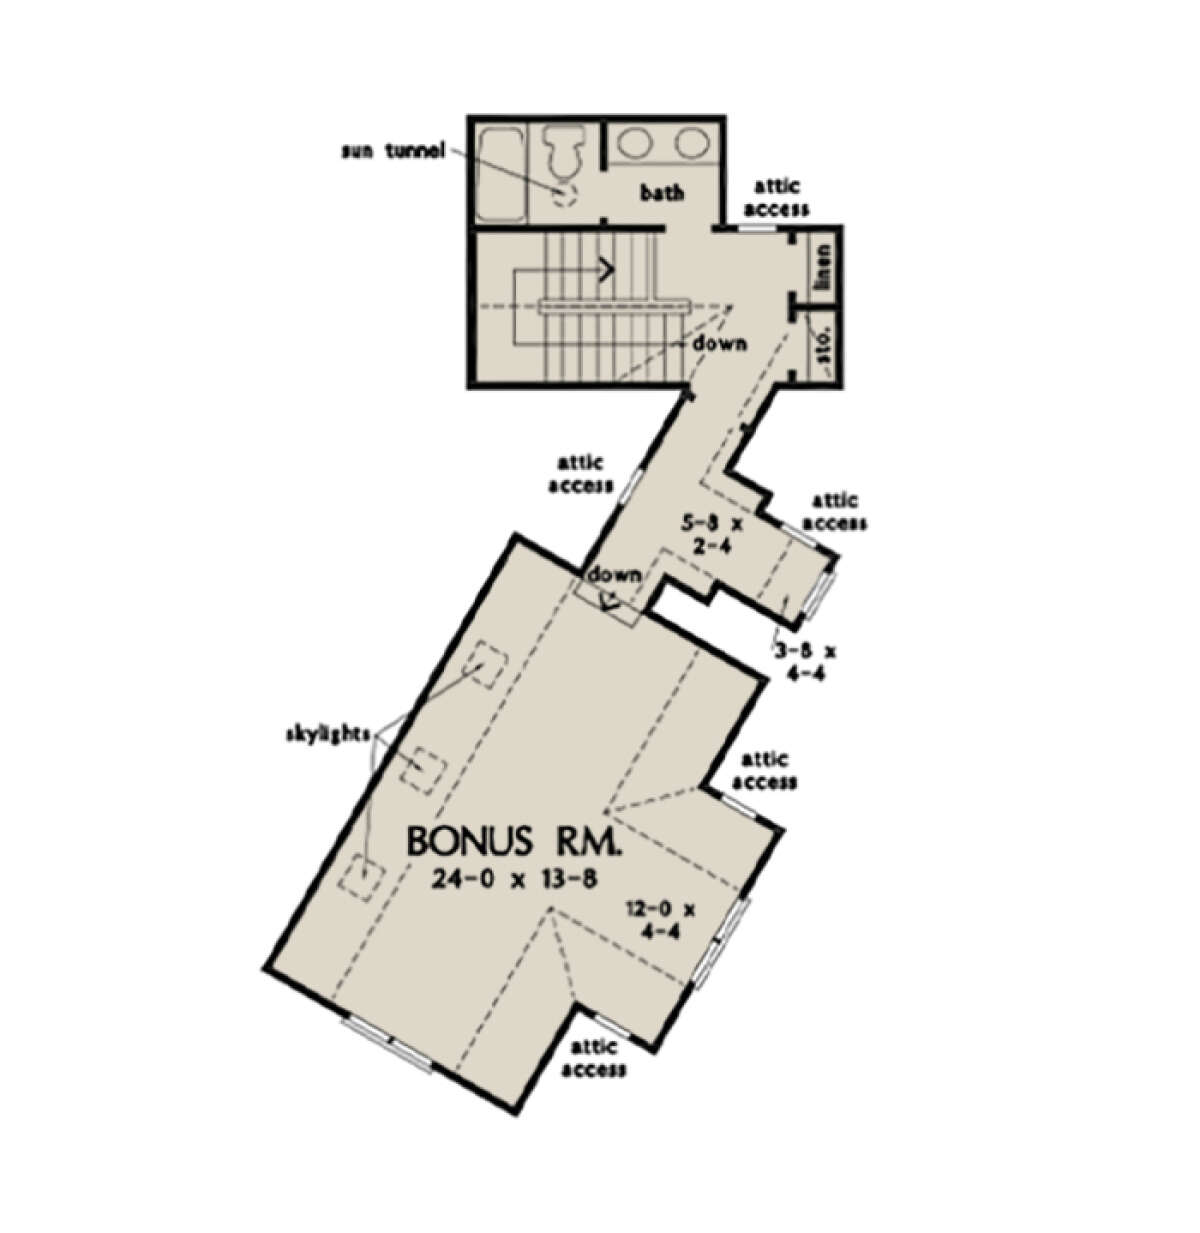 Bonus Room for House Plan #2865-00118